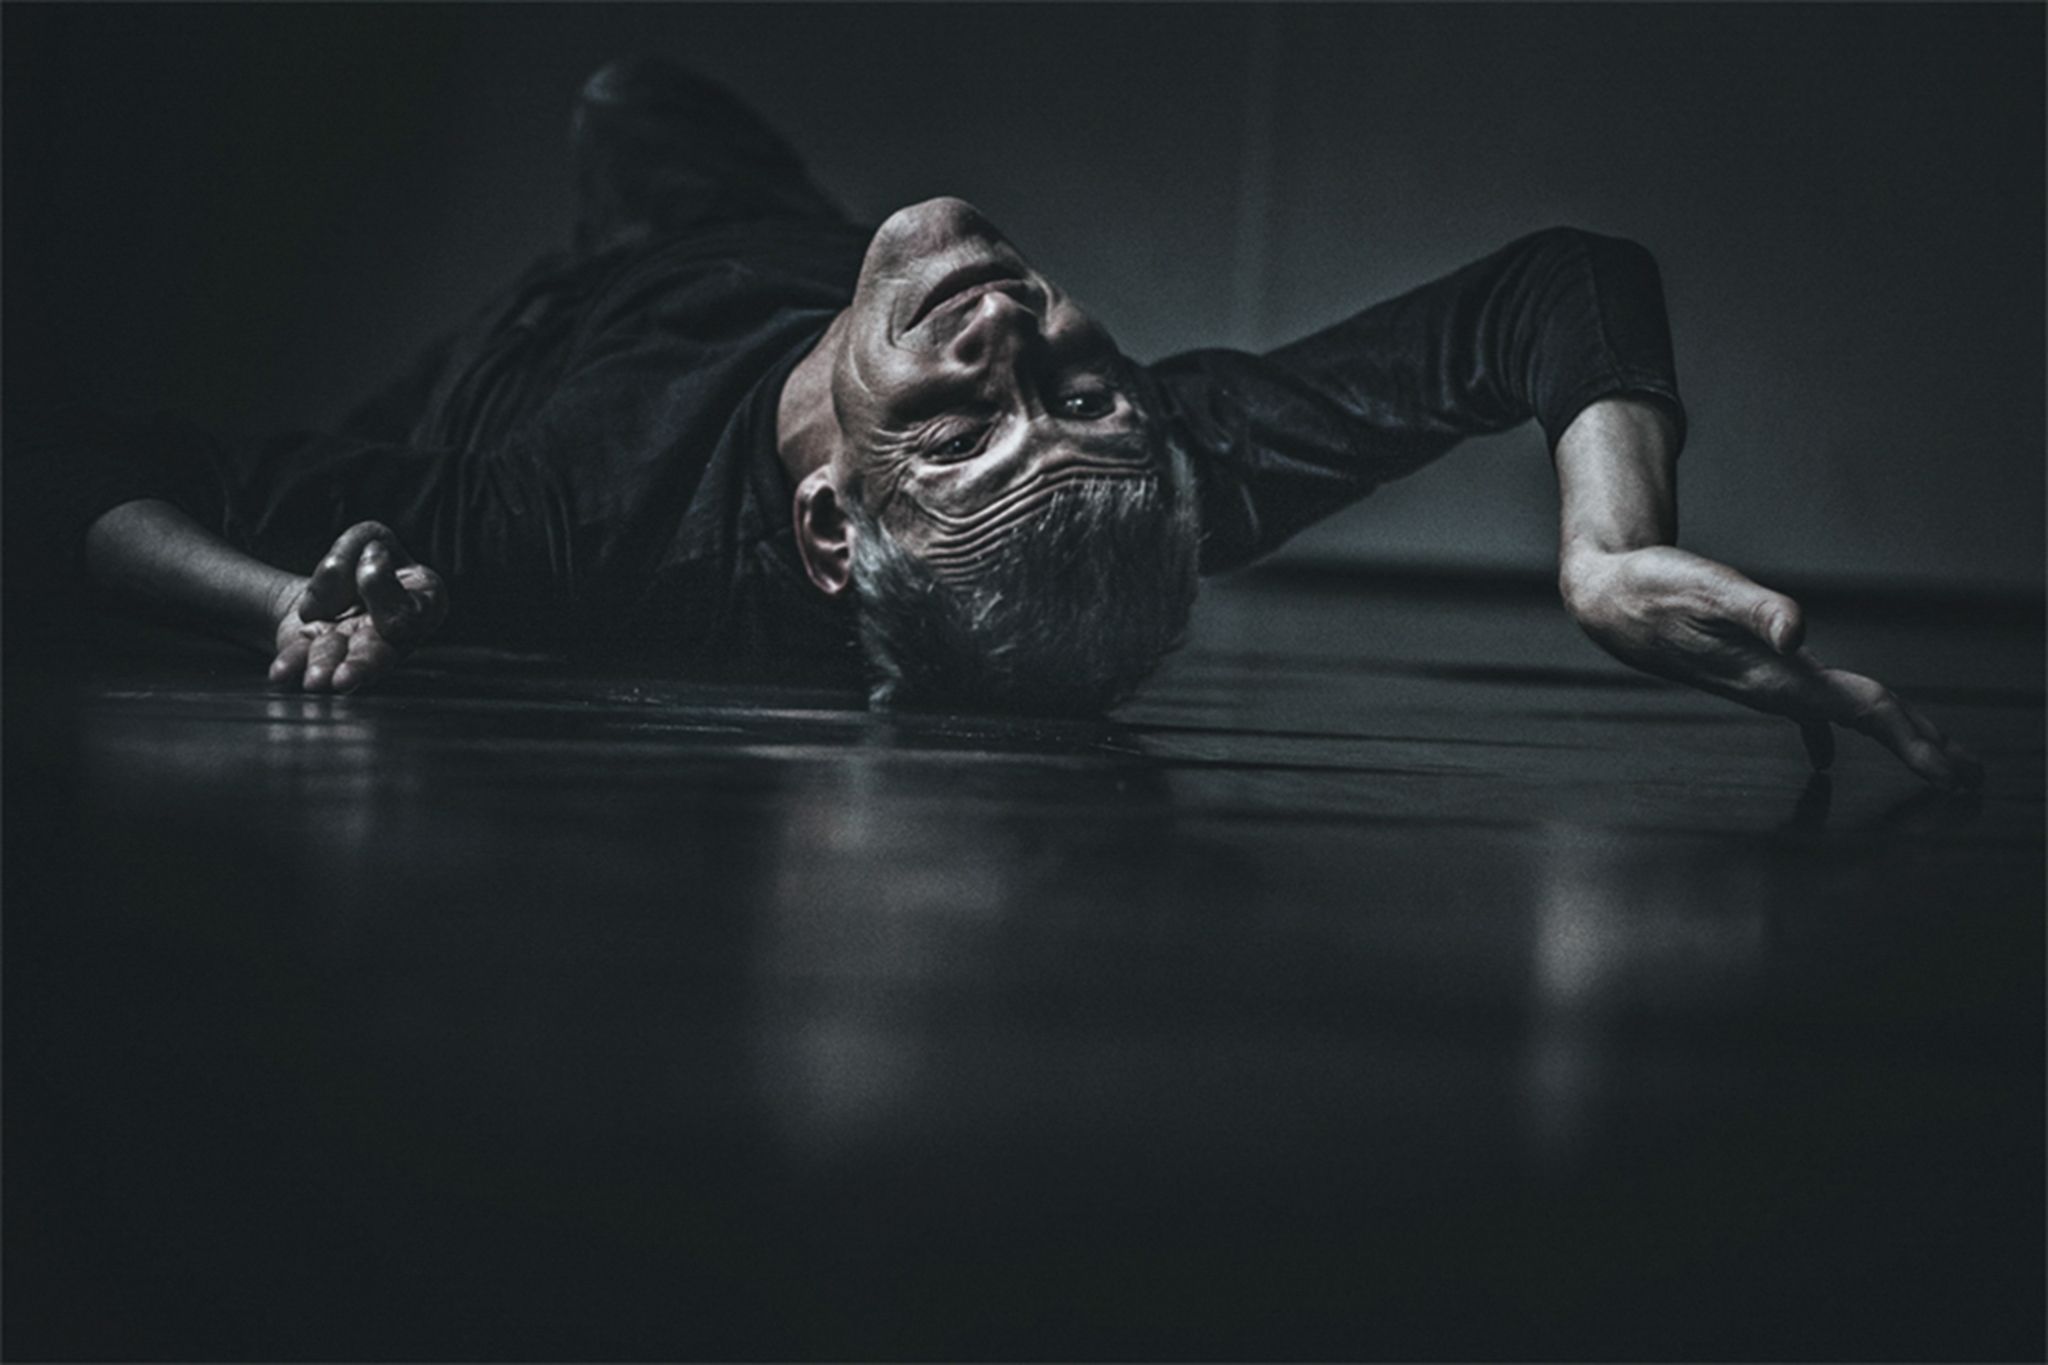 Ein spastisch gelähmter Mann liegt auf dem Rücken auf dem Boden eines dunklen Zimmers.